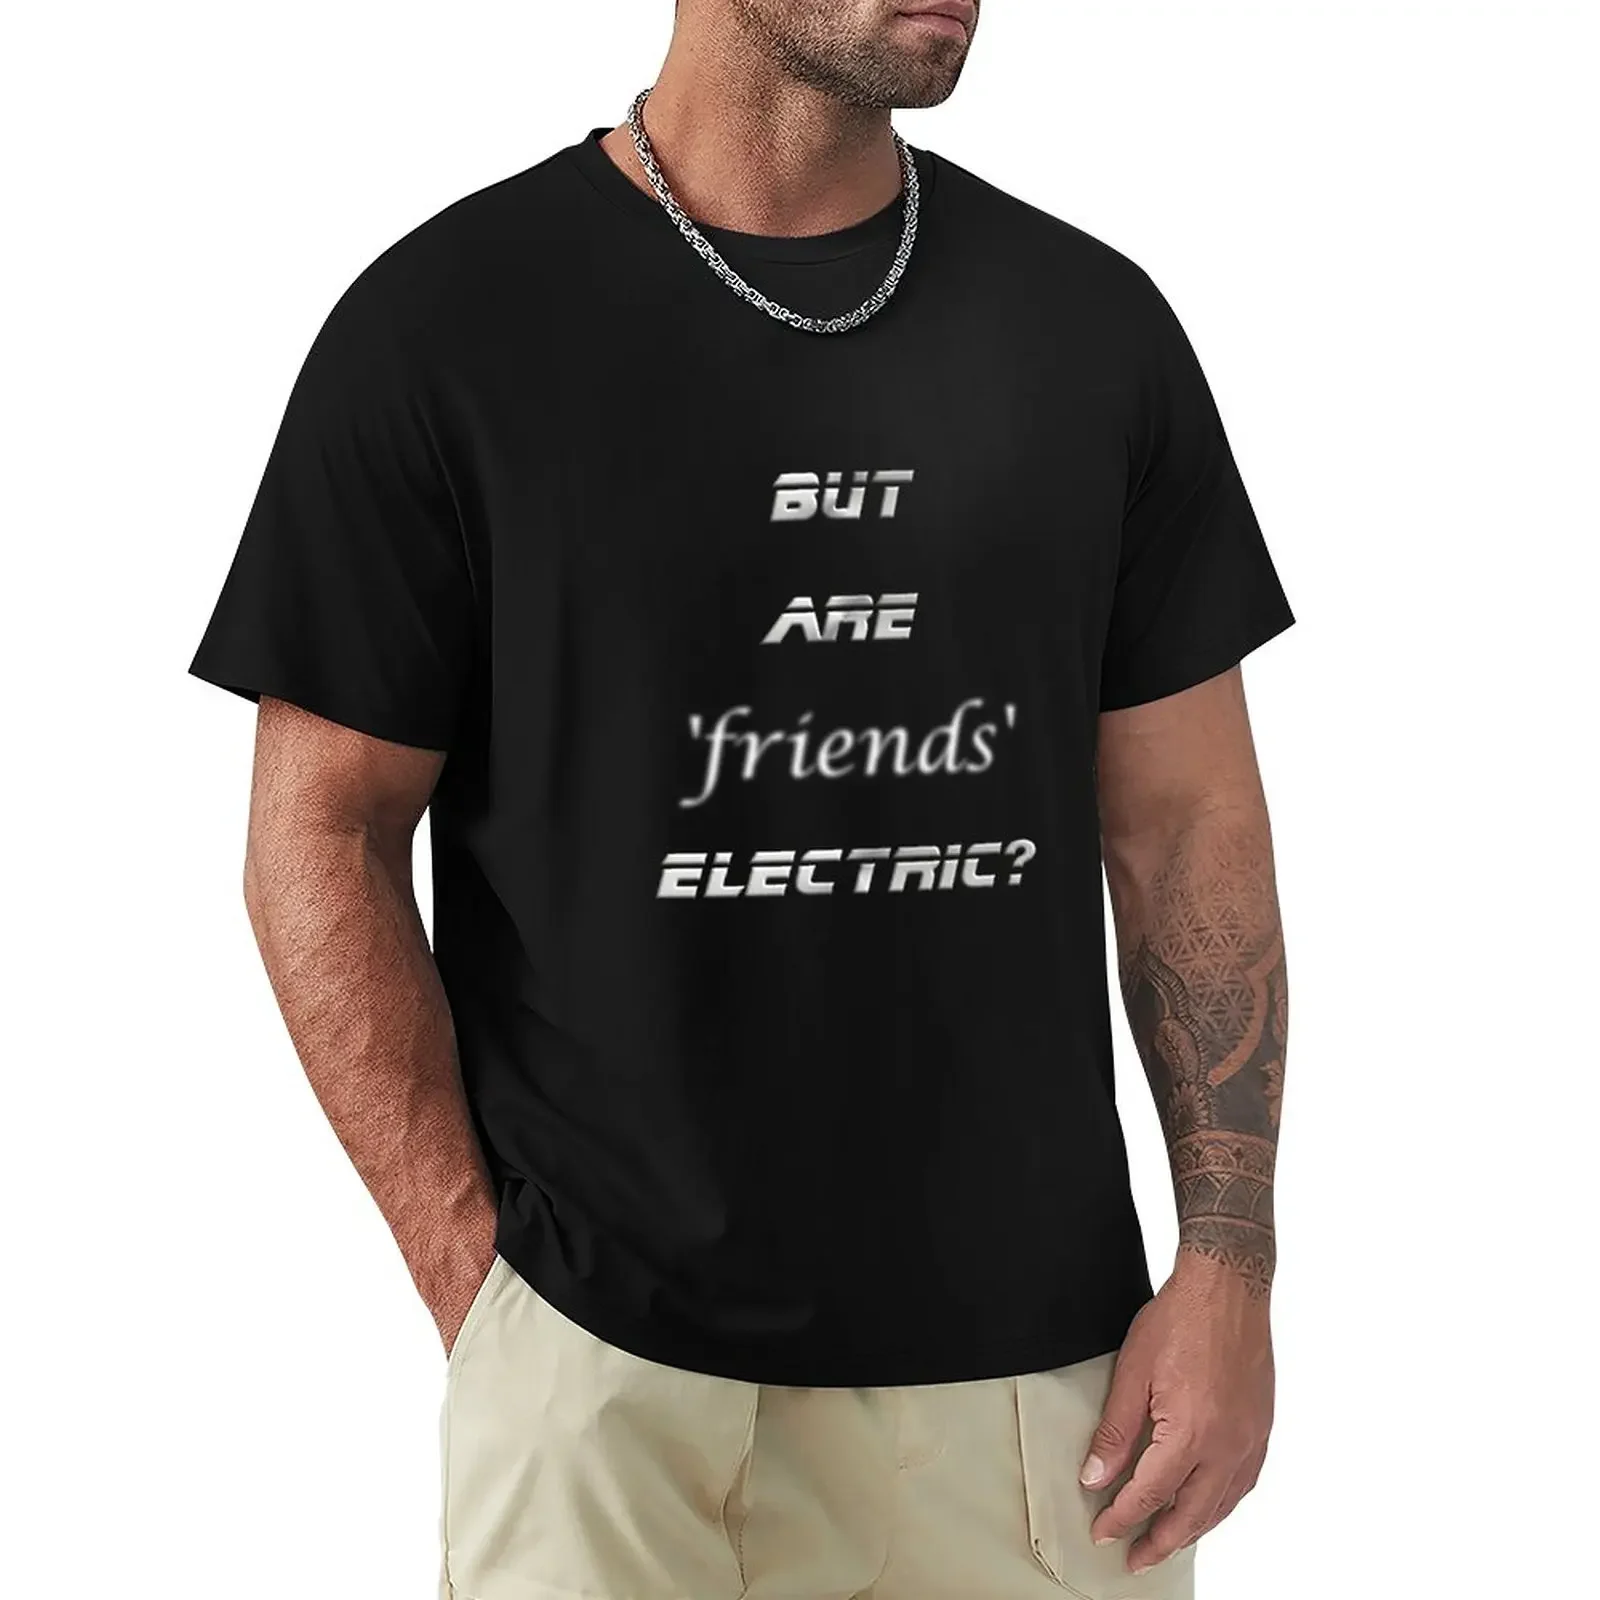 

Друзья электрические Футболка, летние топы, футболки, спортивная одежда для фанатов мужчин